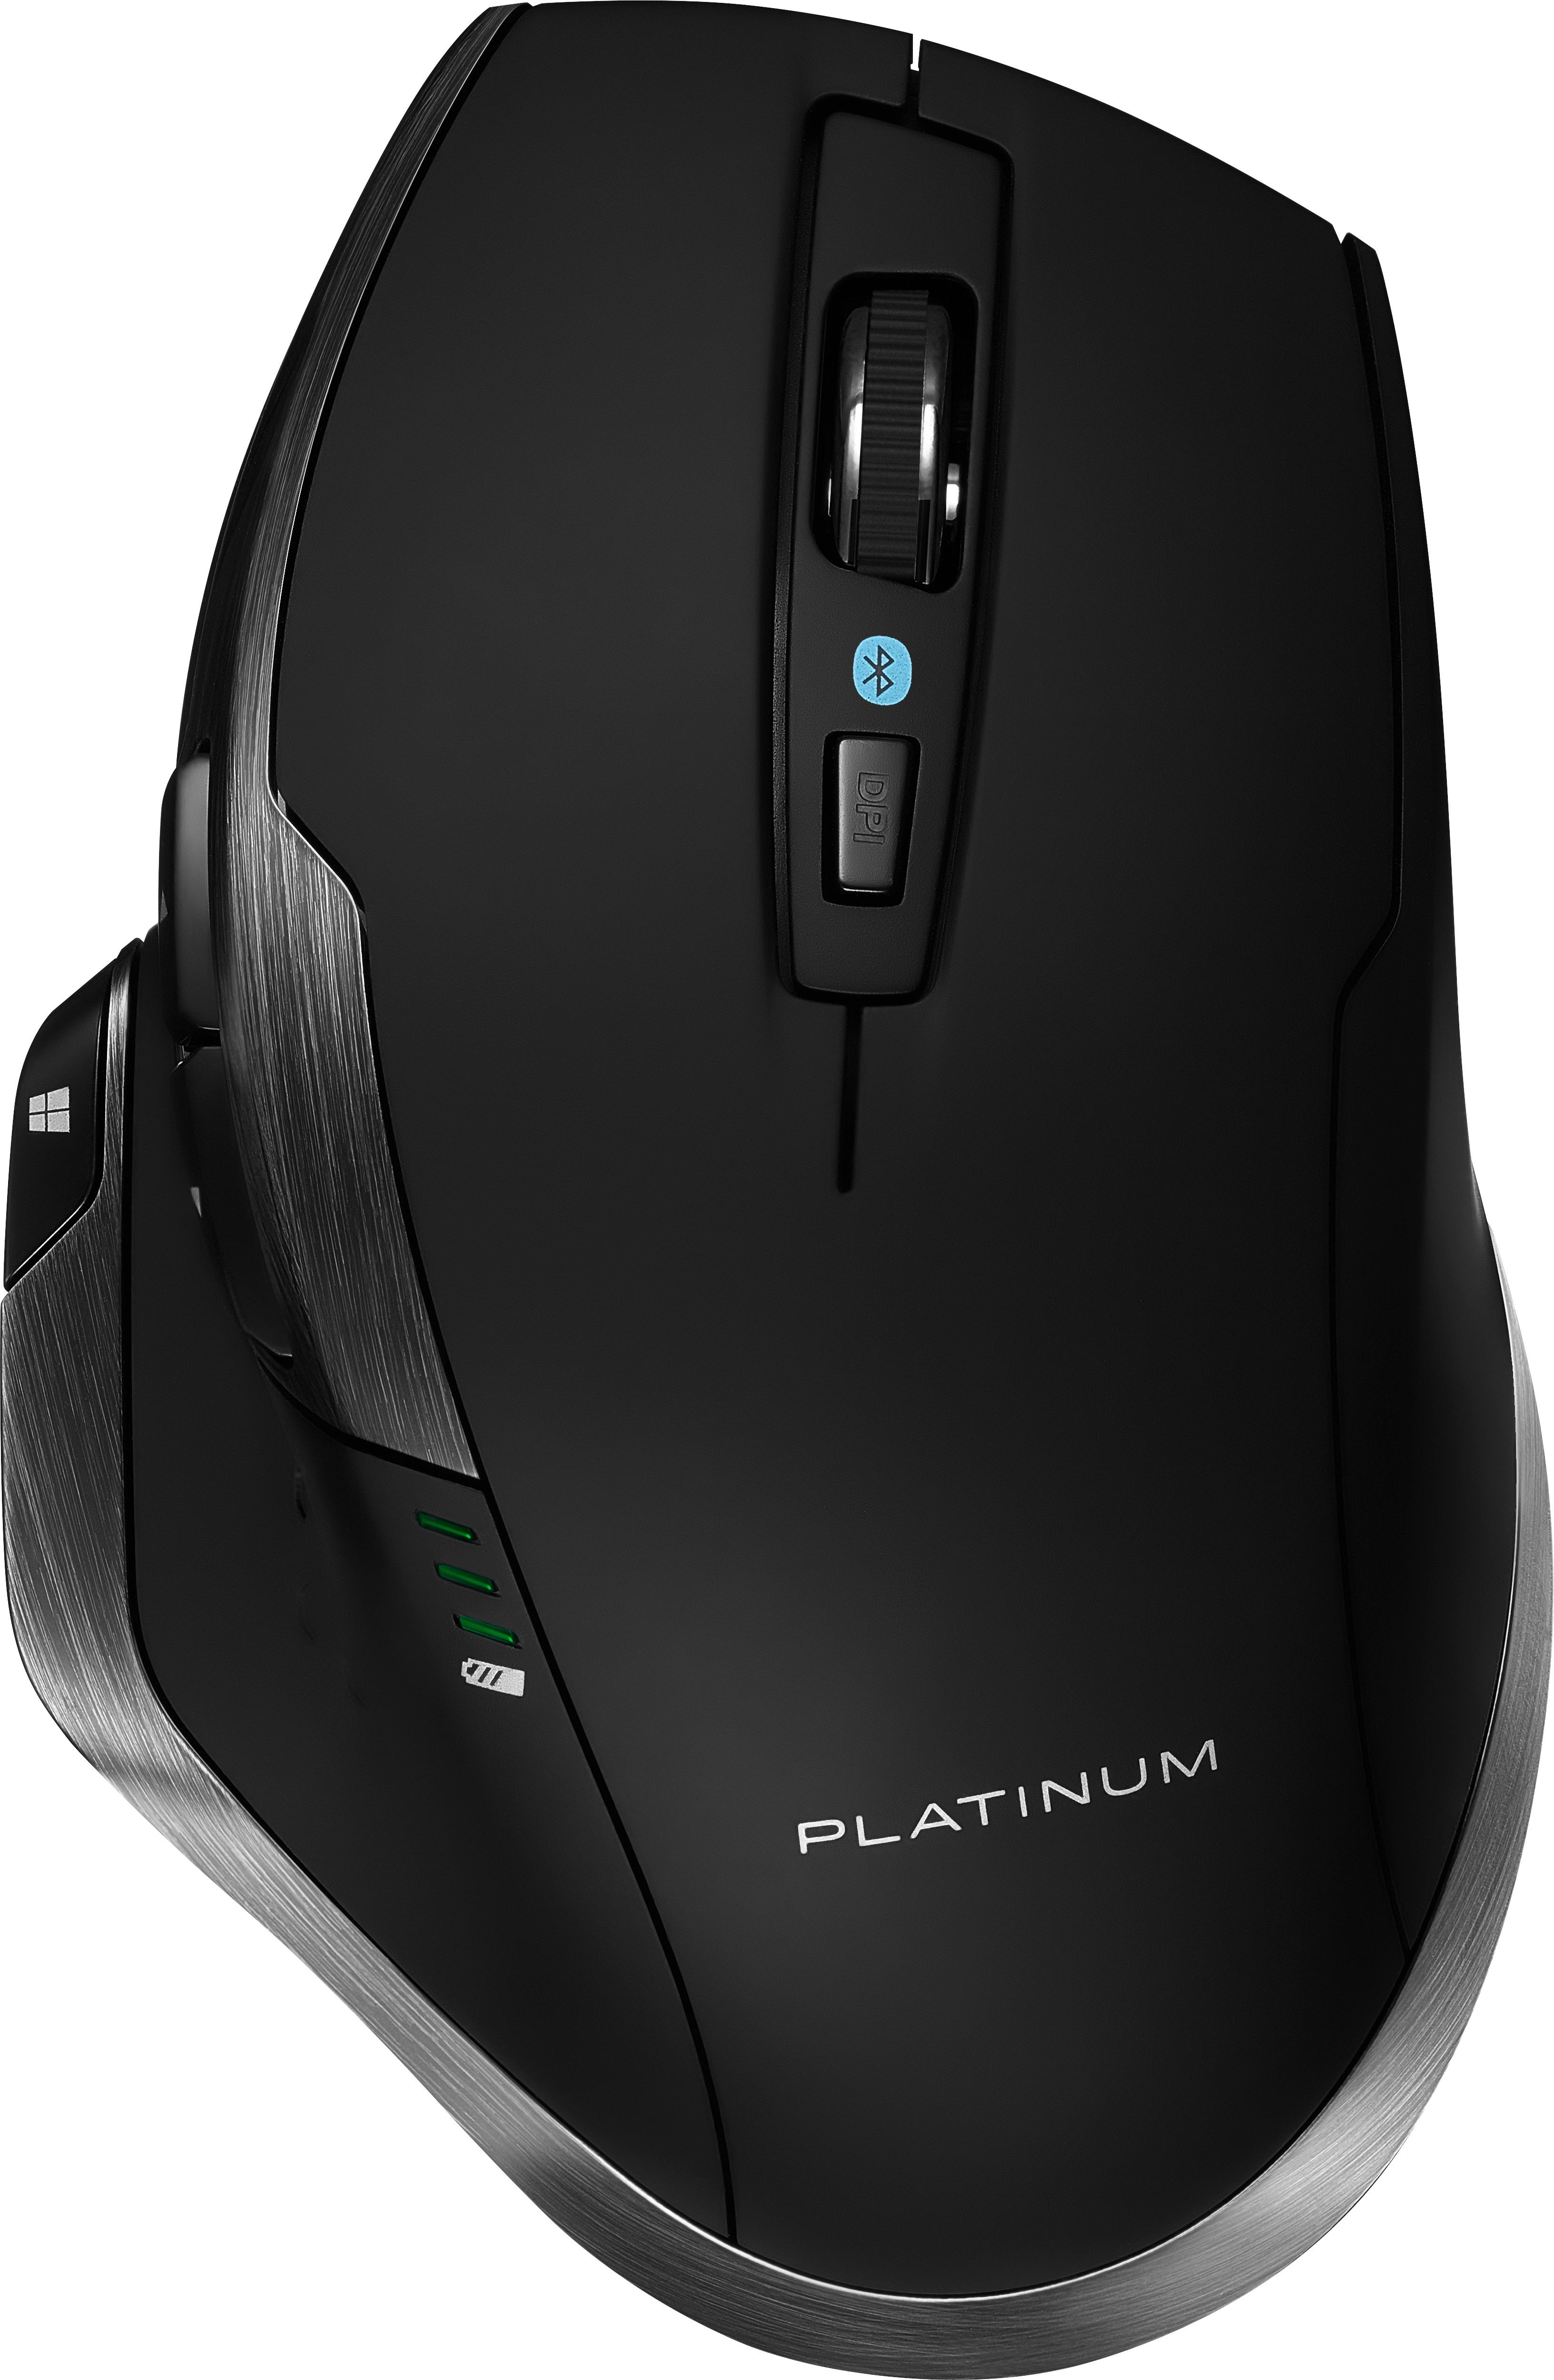 Platinum™ Bluetooth 8-Button Mouse Black PT-PNMBL8BK - Best Buy